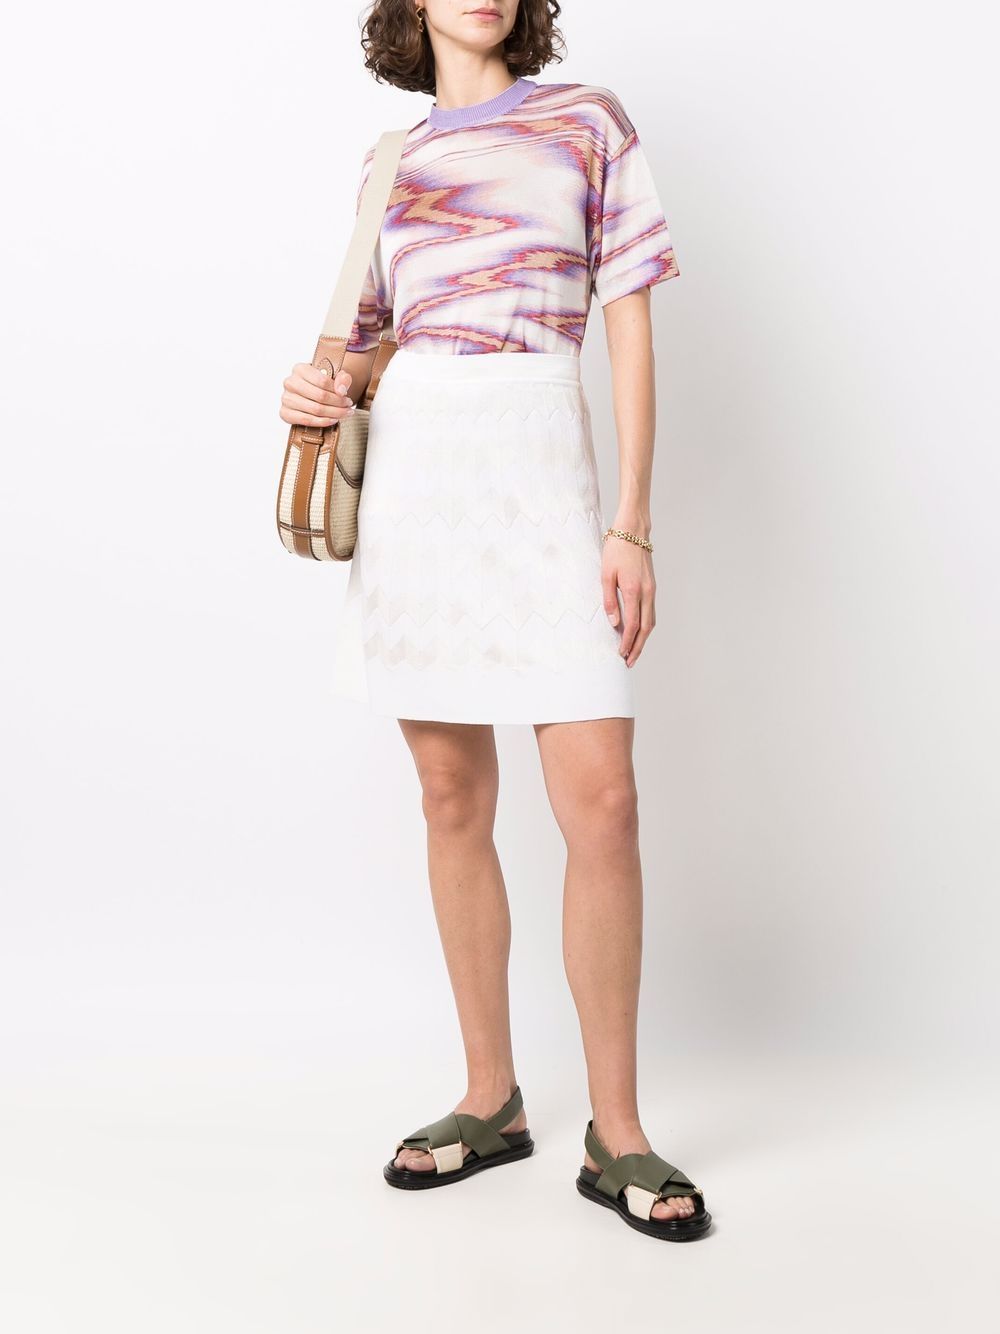 фото Missoni трикотажная юбка с узором зигзаг